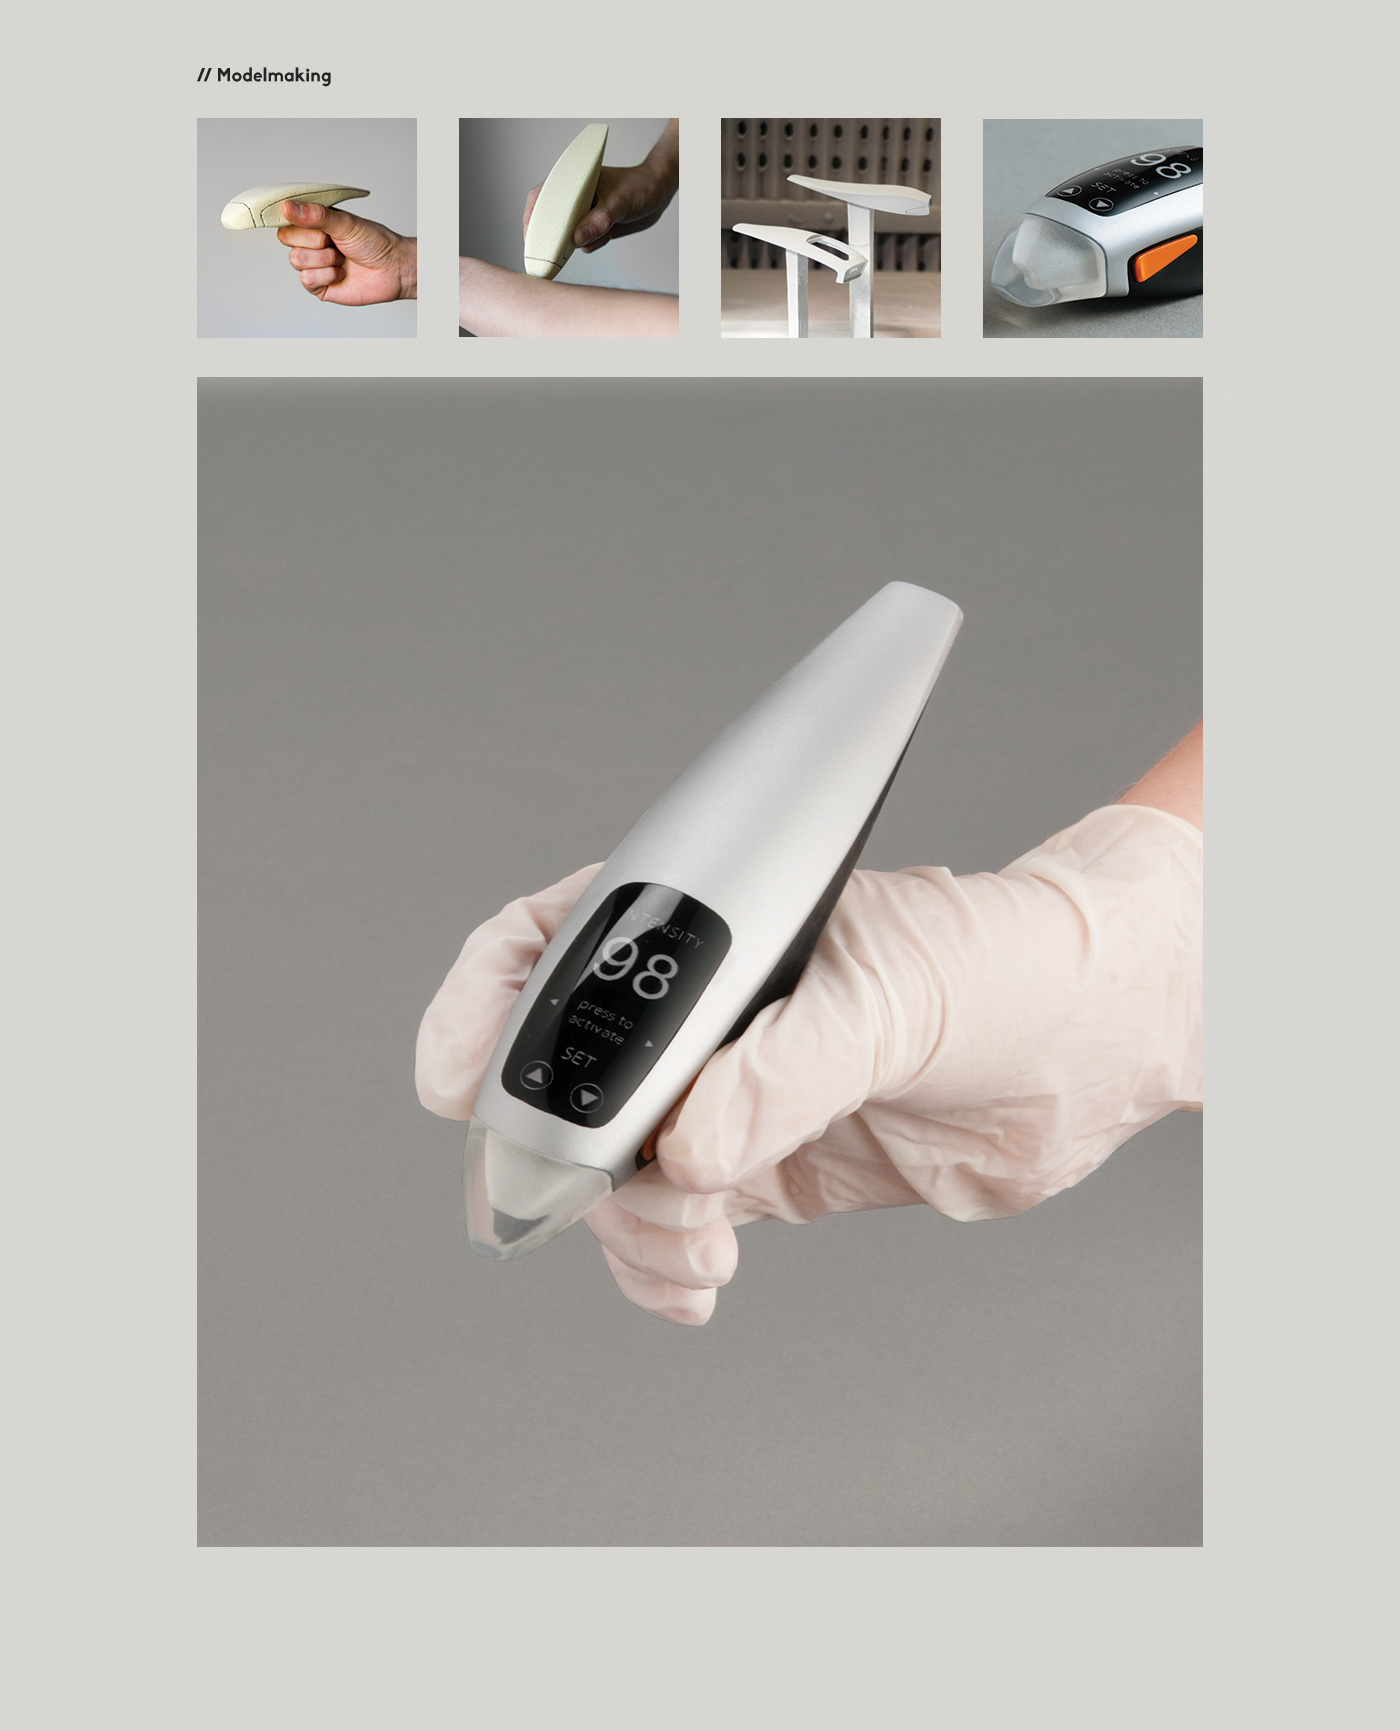 medical future device handheld Ultrasound Brunel 3d printing form1